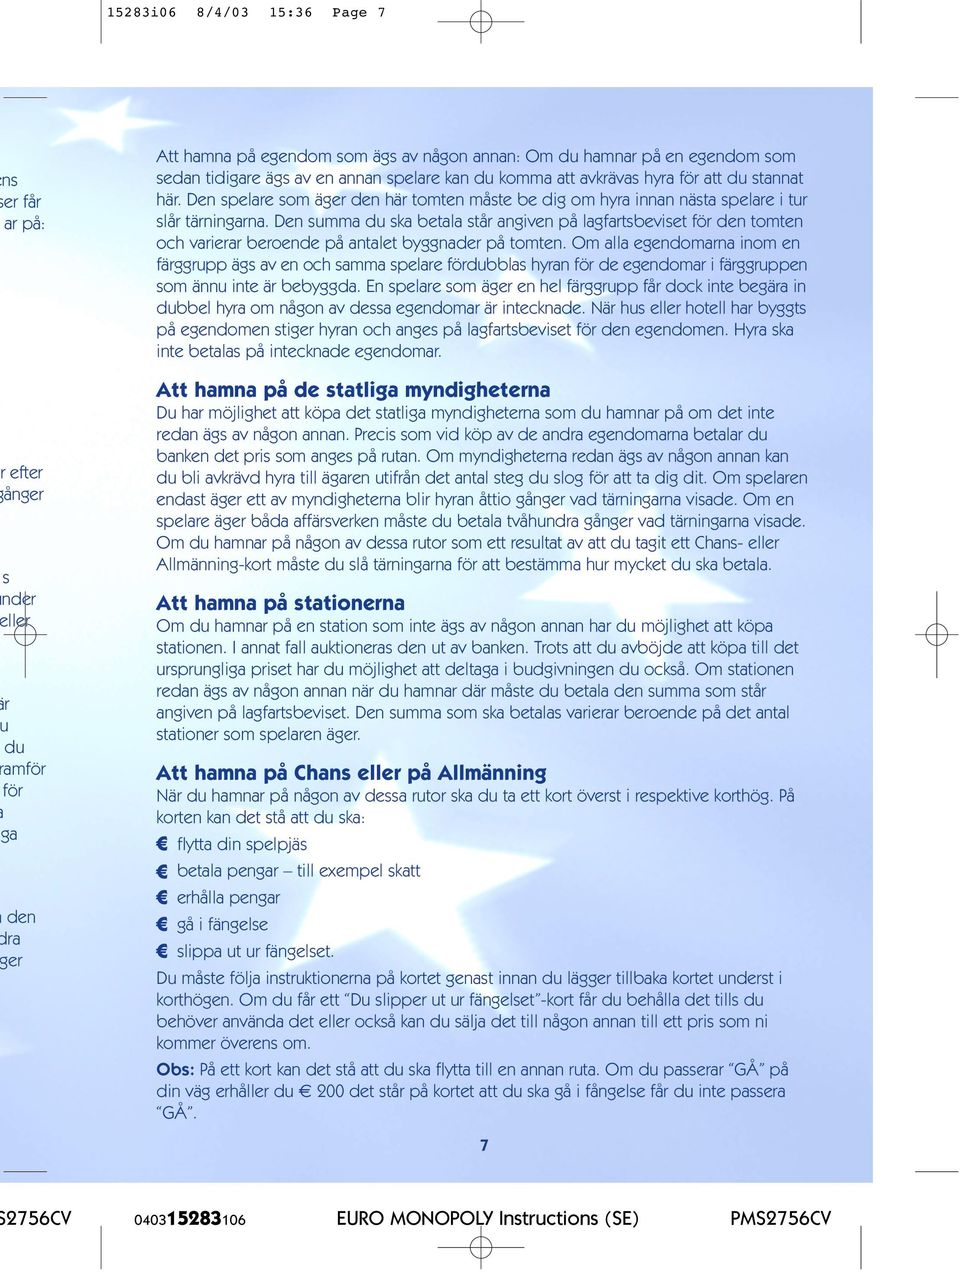 Regler för specialutgåvan av European Landmark Monopoly - PDF Free Download